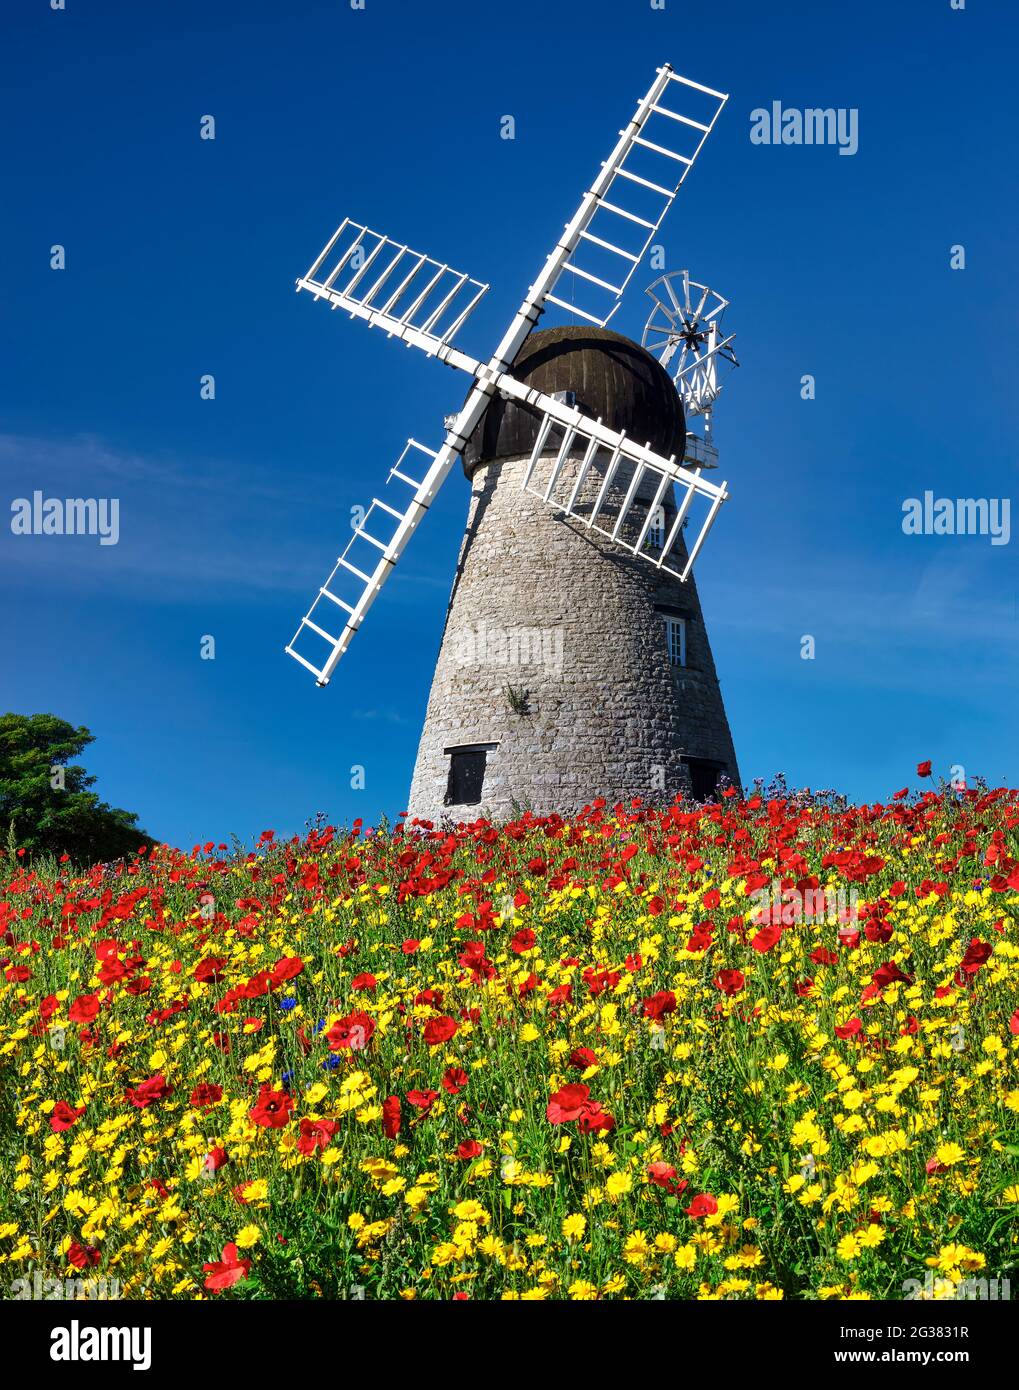 Fleurs sauvages d'été en face du moulin à vent de Whitburn, Whitburn, South Tyneside, Angleterre, Royaume-Uni Banque D'Images